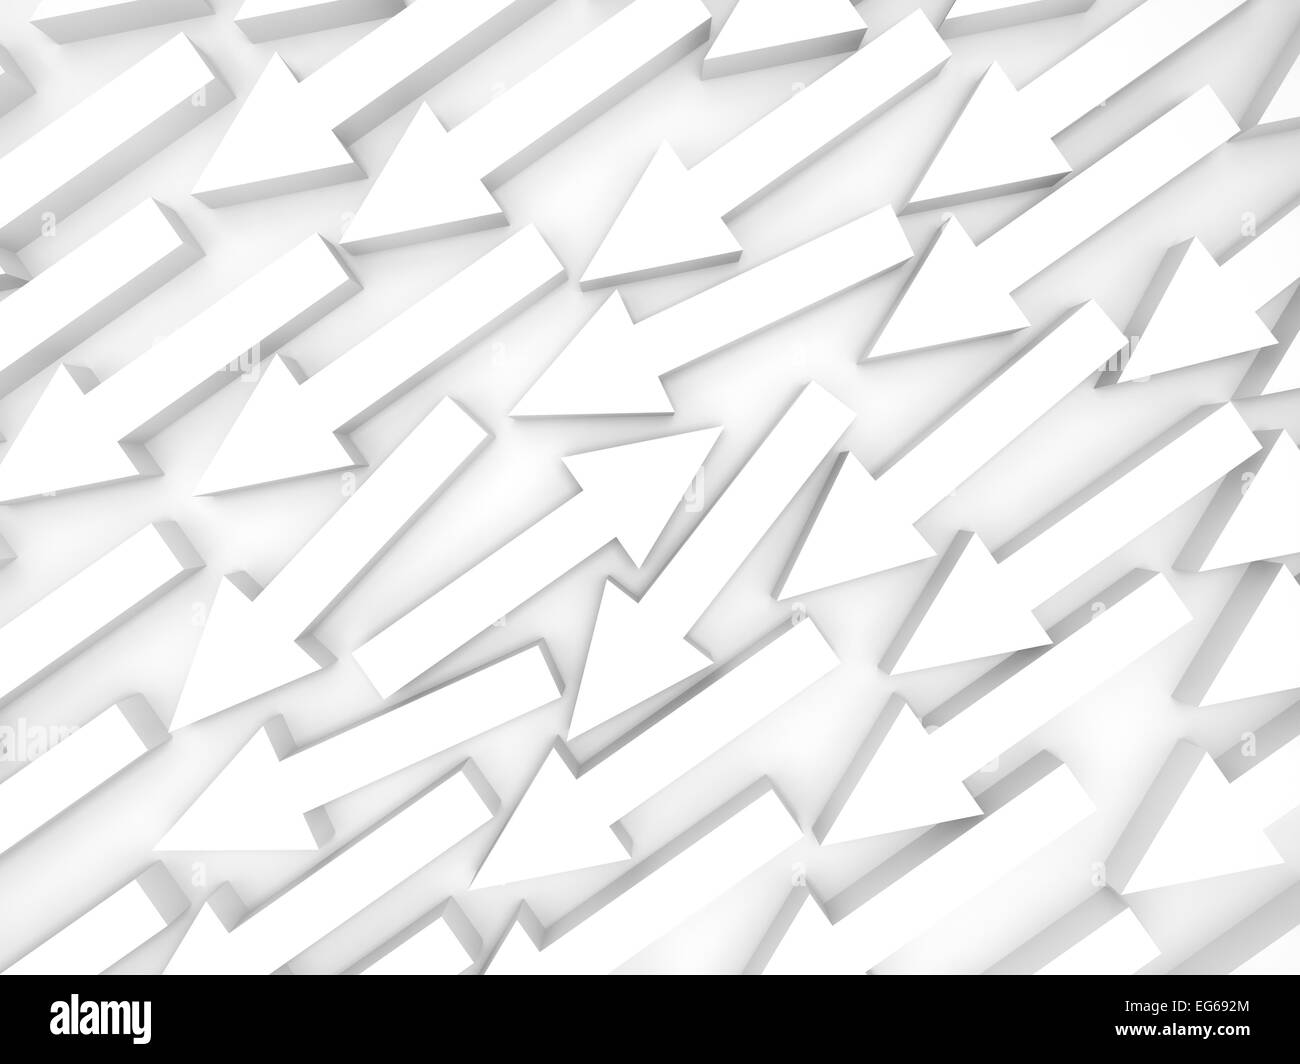 Abstract 3d illustration, une flèche blanche va en face Banque D'Images